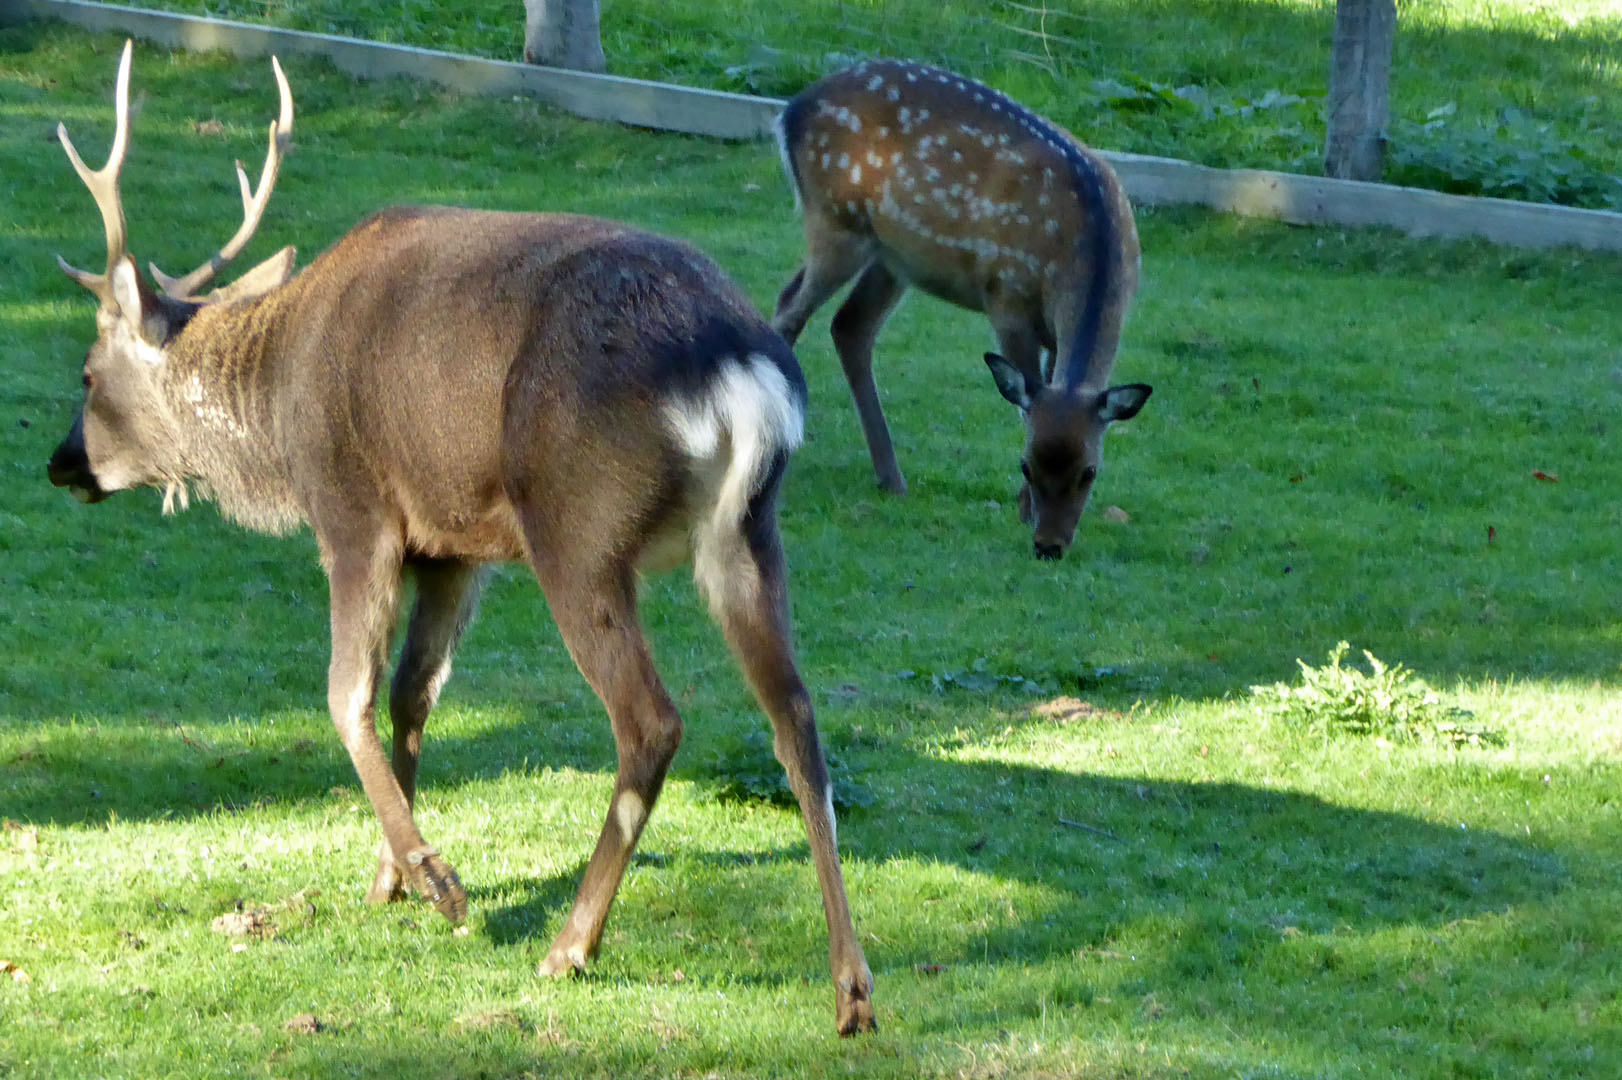 Tierpark Krüzen bei Lauenburg, Ausflug der FIR am Samstag, den